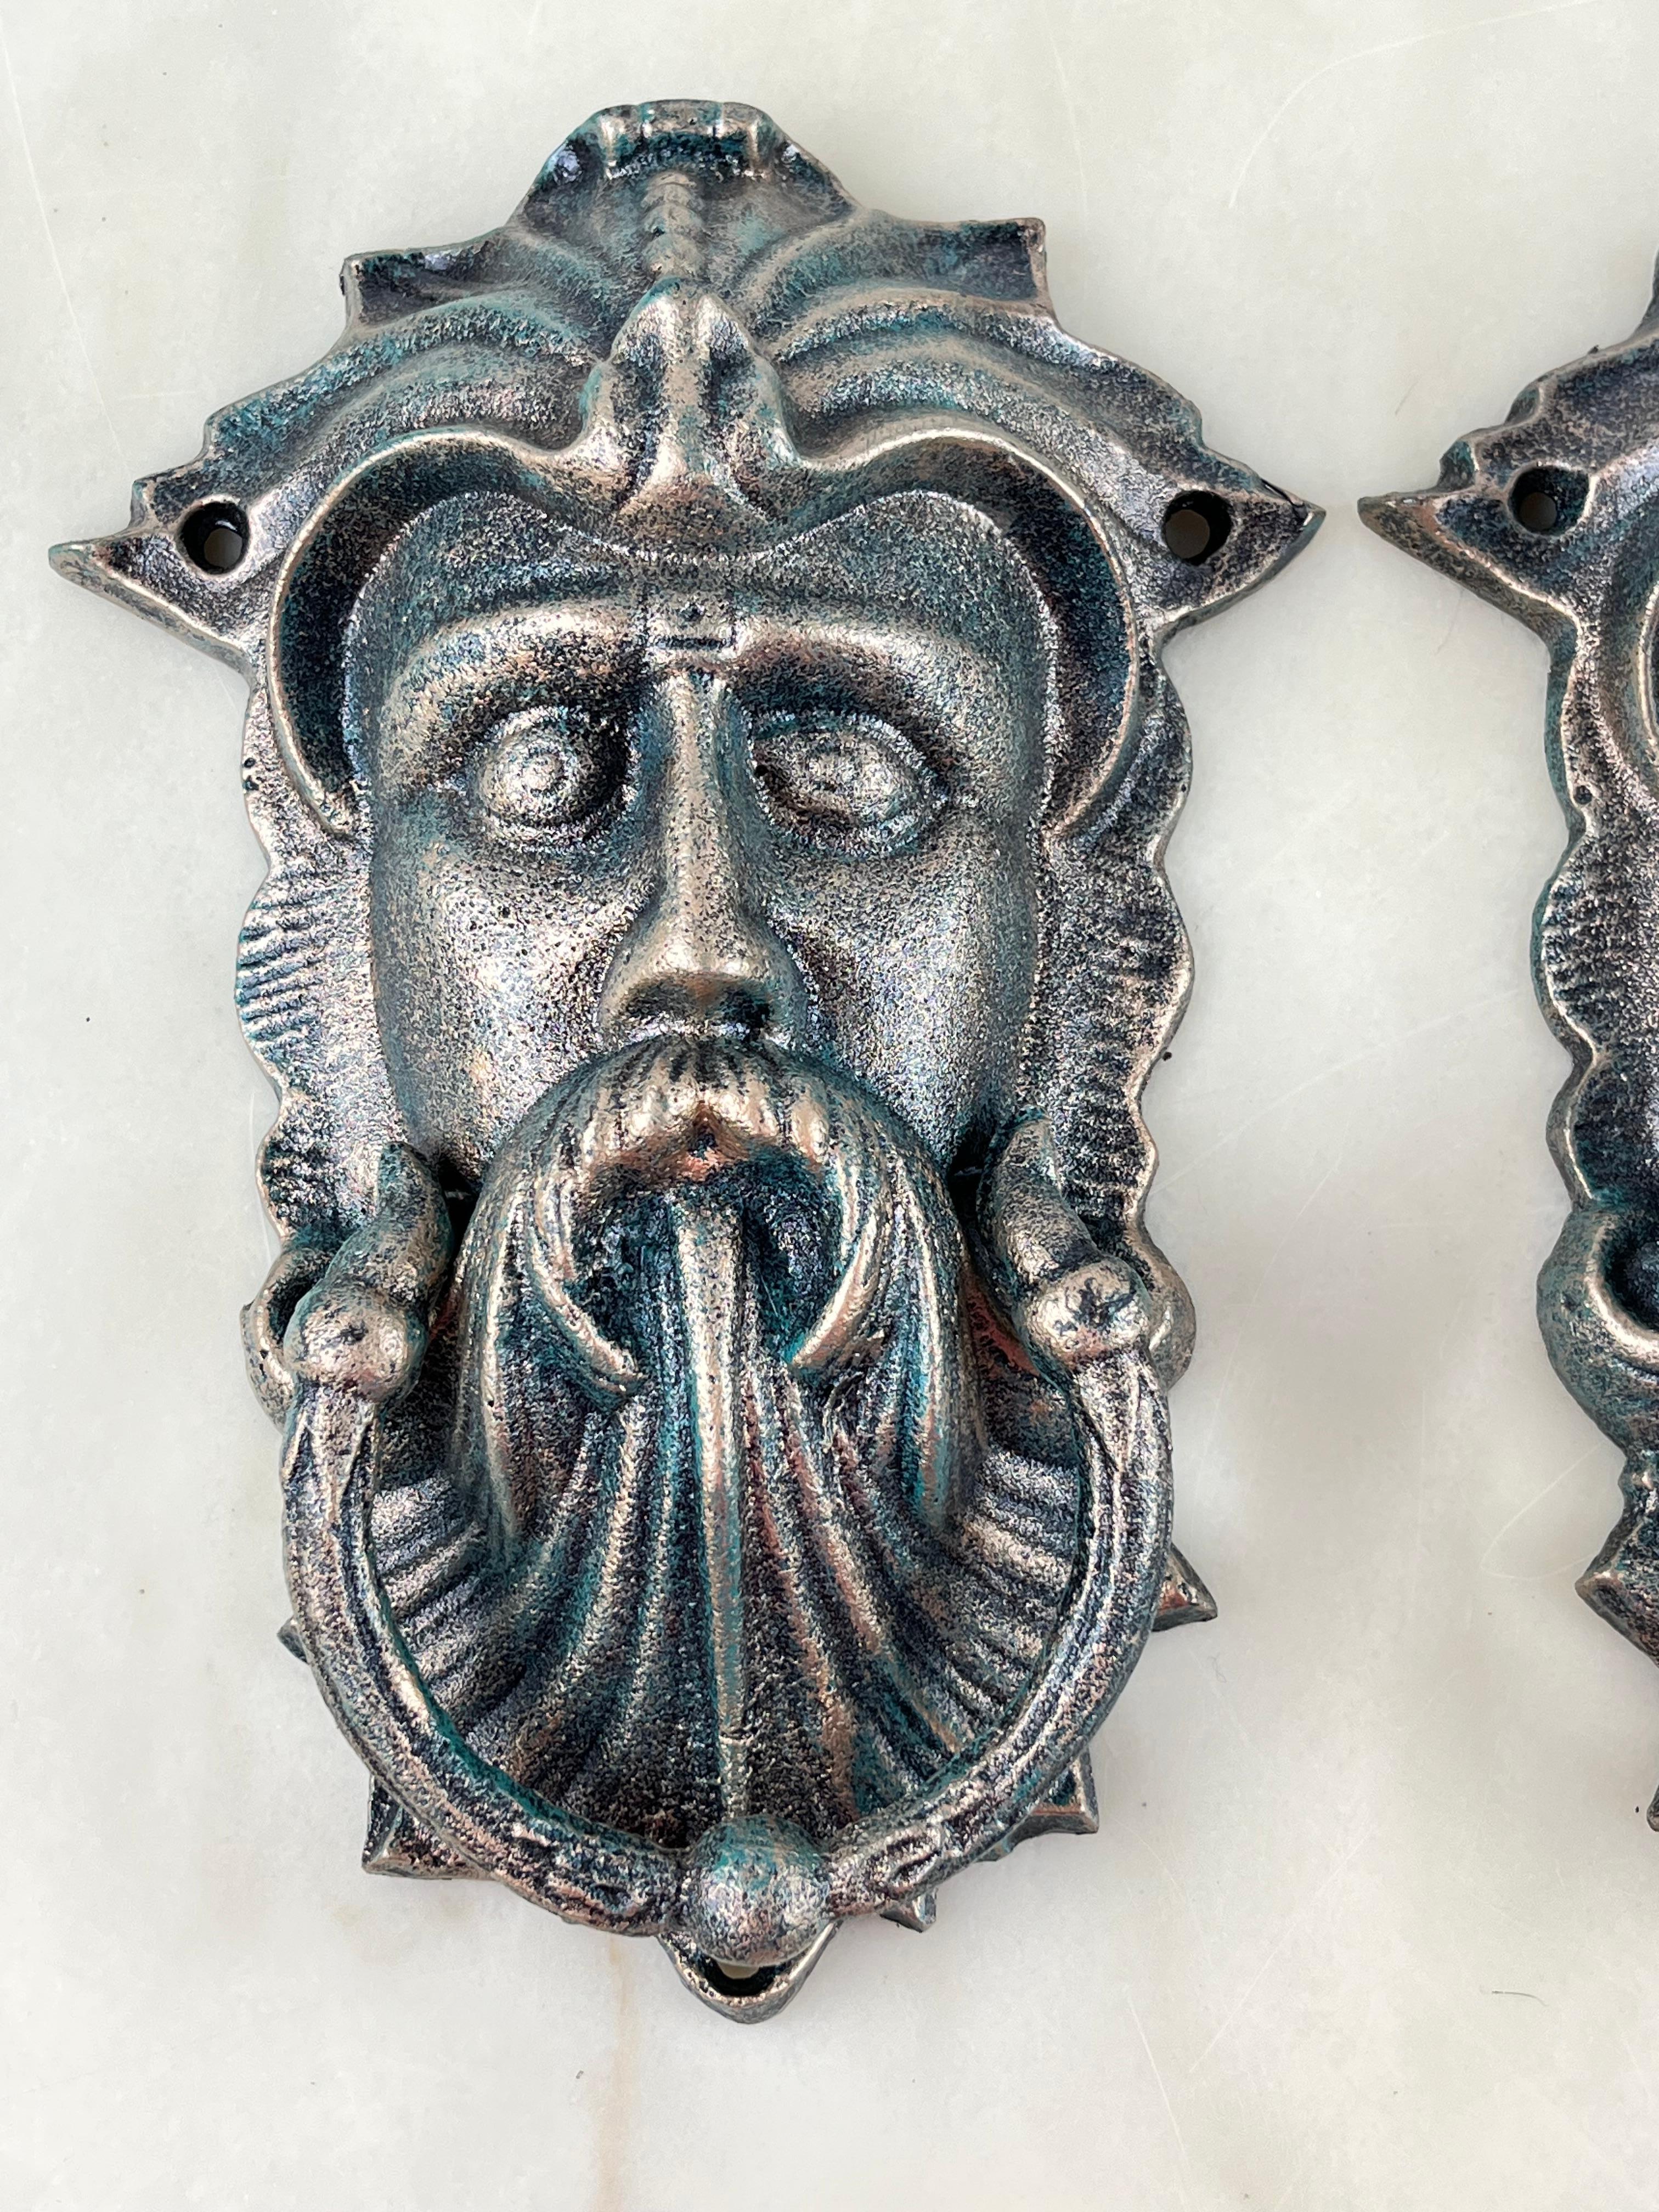 Paar Türklopfer aus Bronze, Italien, 1980er Jahre
Sie wurden in einem Lagerhaus gefunden und sind nie benutzt worden. Intakt und in ausgezeichnetem Zustand. Kleine Anzeichen von Alterung.